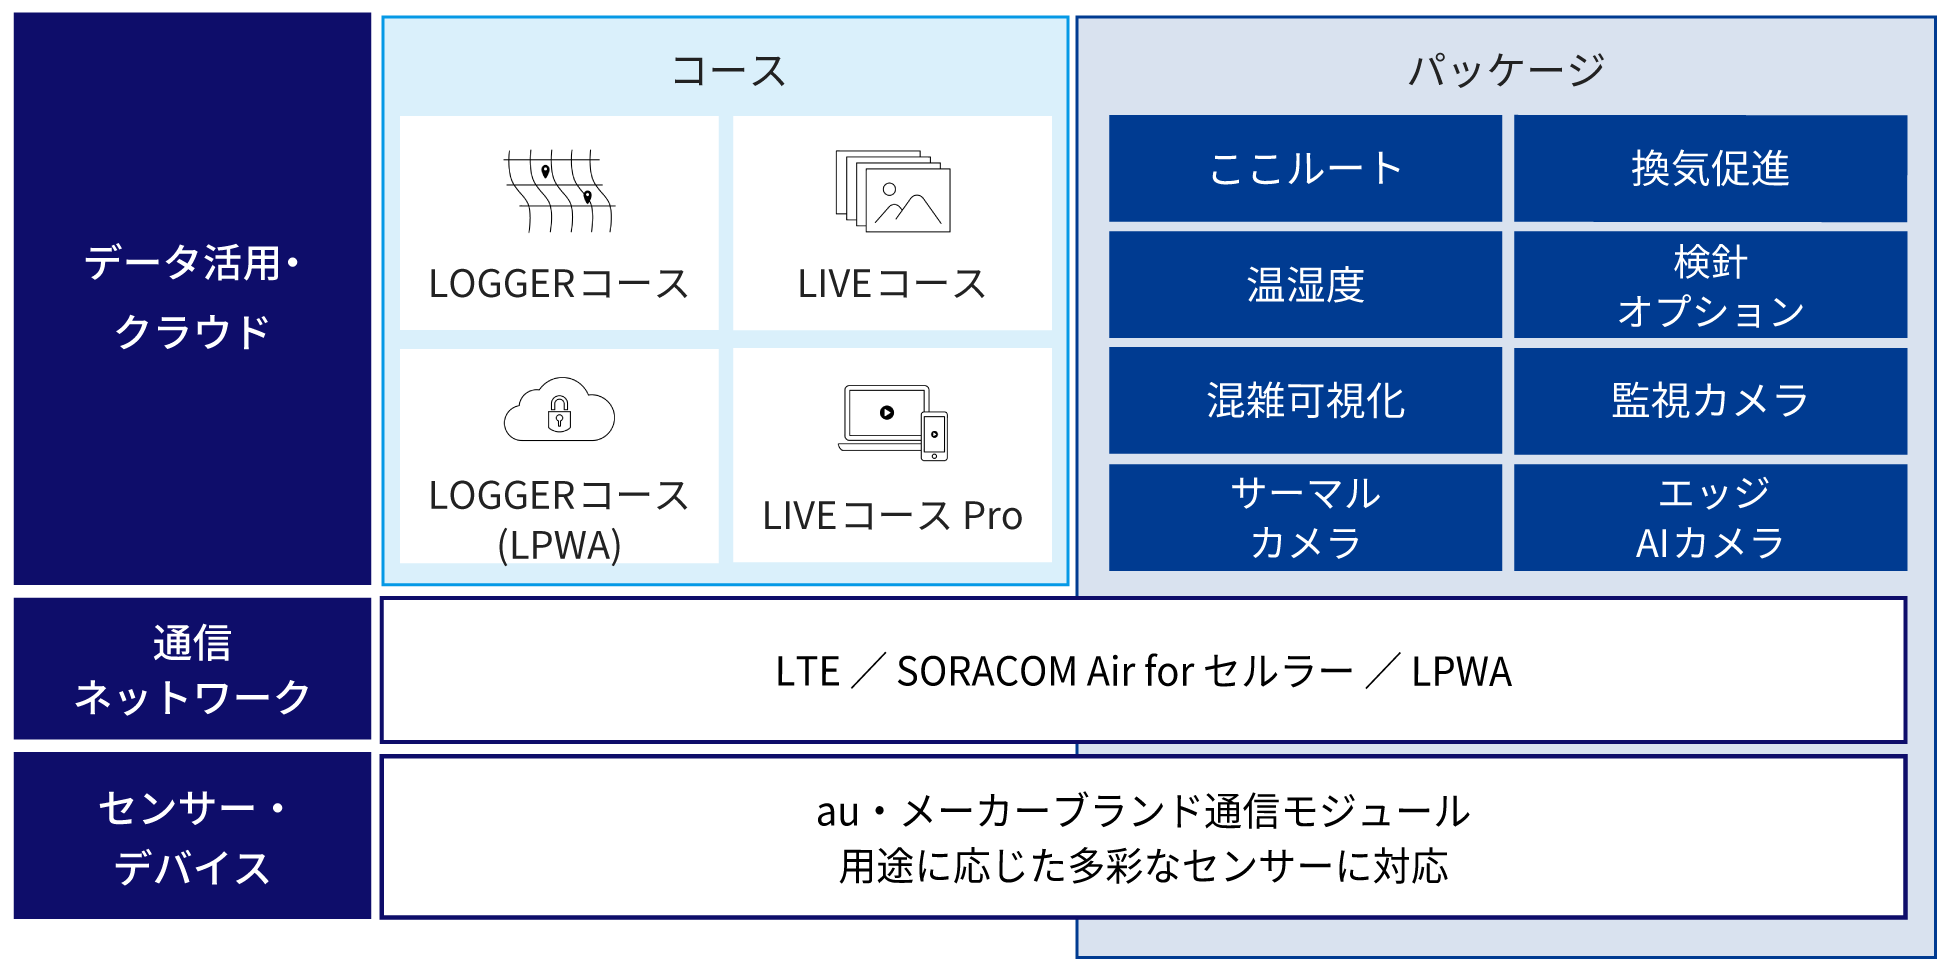 データ活用・クラウド　コース：LOGGERコース、LIVEコース、LOGGERコース(LPWA)、LIVEコース Pro　パッケージ：ここルート、換気促進、温湿度、検針オプション、混雑可視化、監視カメラ、サーマルカメラ、エッジAIカメラ 通信ネットワーク：LTE / SORACOM Air for セルラー/LPWA センサー・デバイス：au ・メーカーブランド通信モジュール。用途に応じた多彩なセンサーに対応。